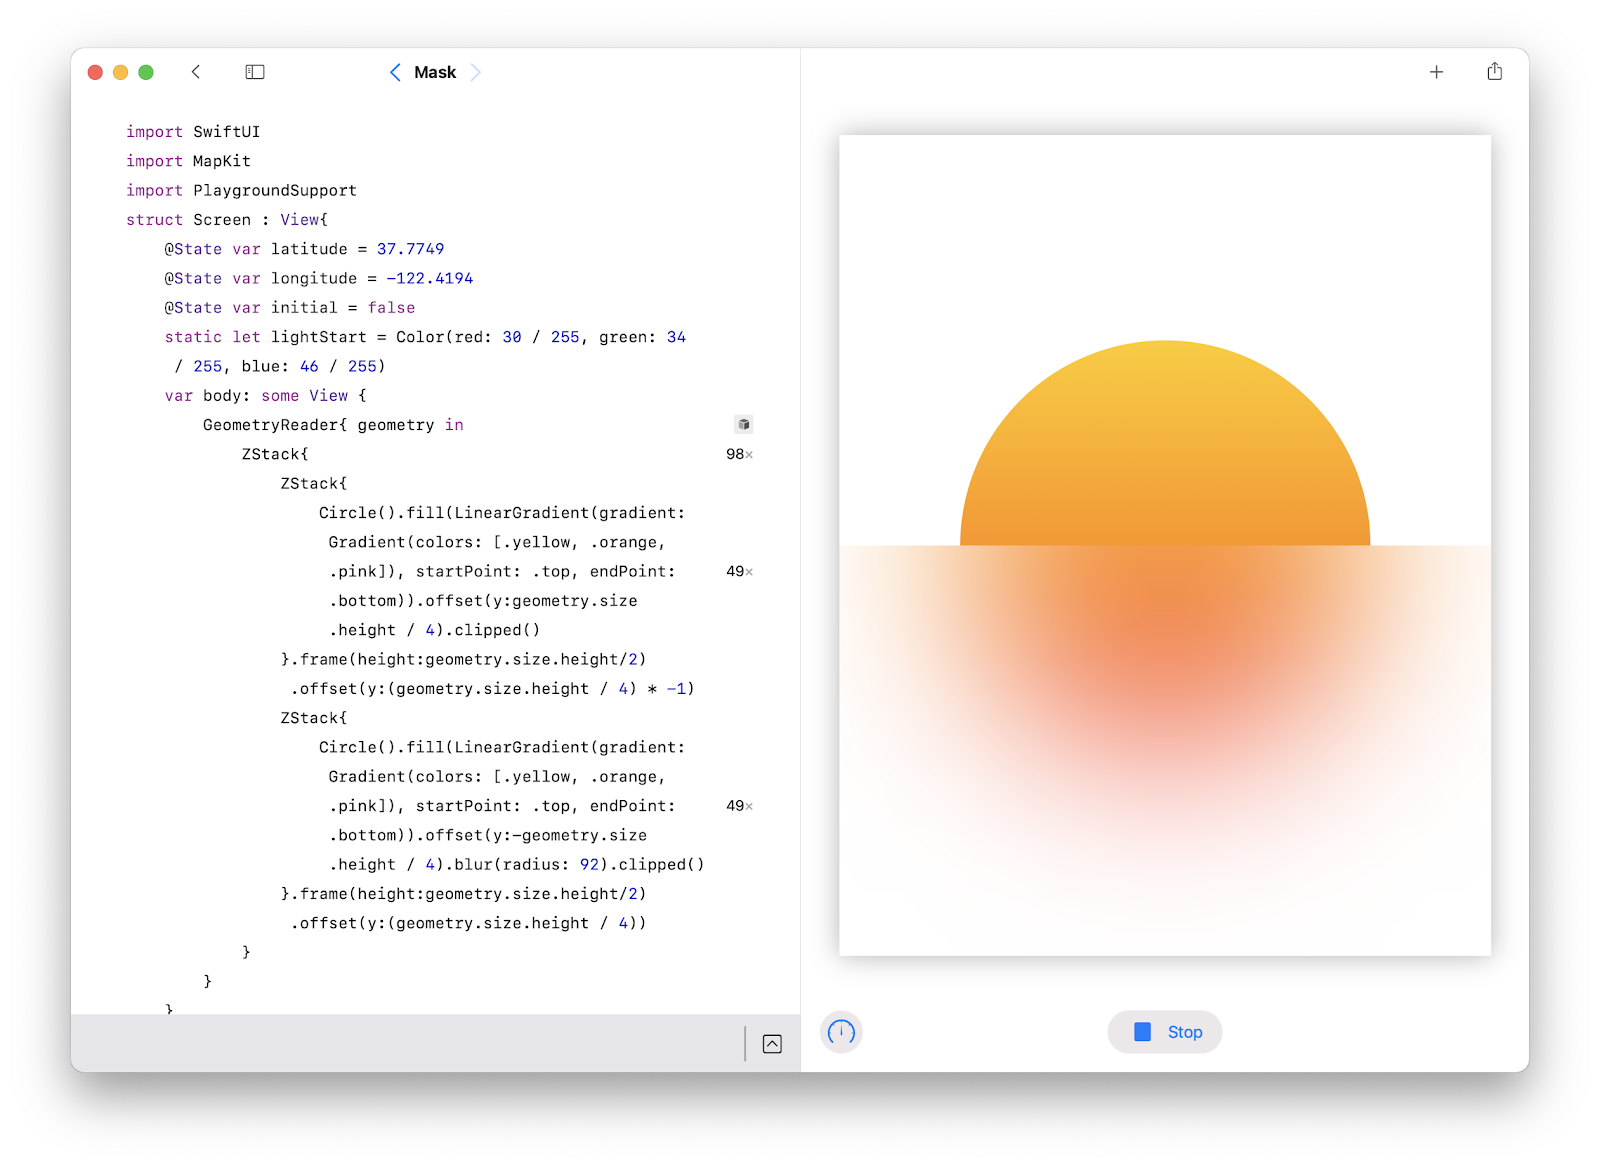 SwiftUI là một công nghệ thú vị để xây dựng các ứng dụng cho các nền tảng Apple và đang trở thành xu hướng phổ biến. Xem hình ảnh liên quan đến SwiftUI để hiểu rõ hơn về công nghệ này và cách sử dụng nó để tạo ra các ứng dụng đẹp và chuyên nghiệp.